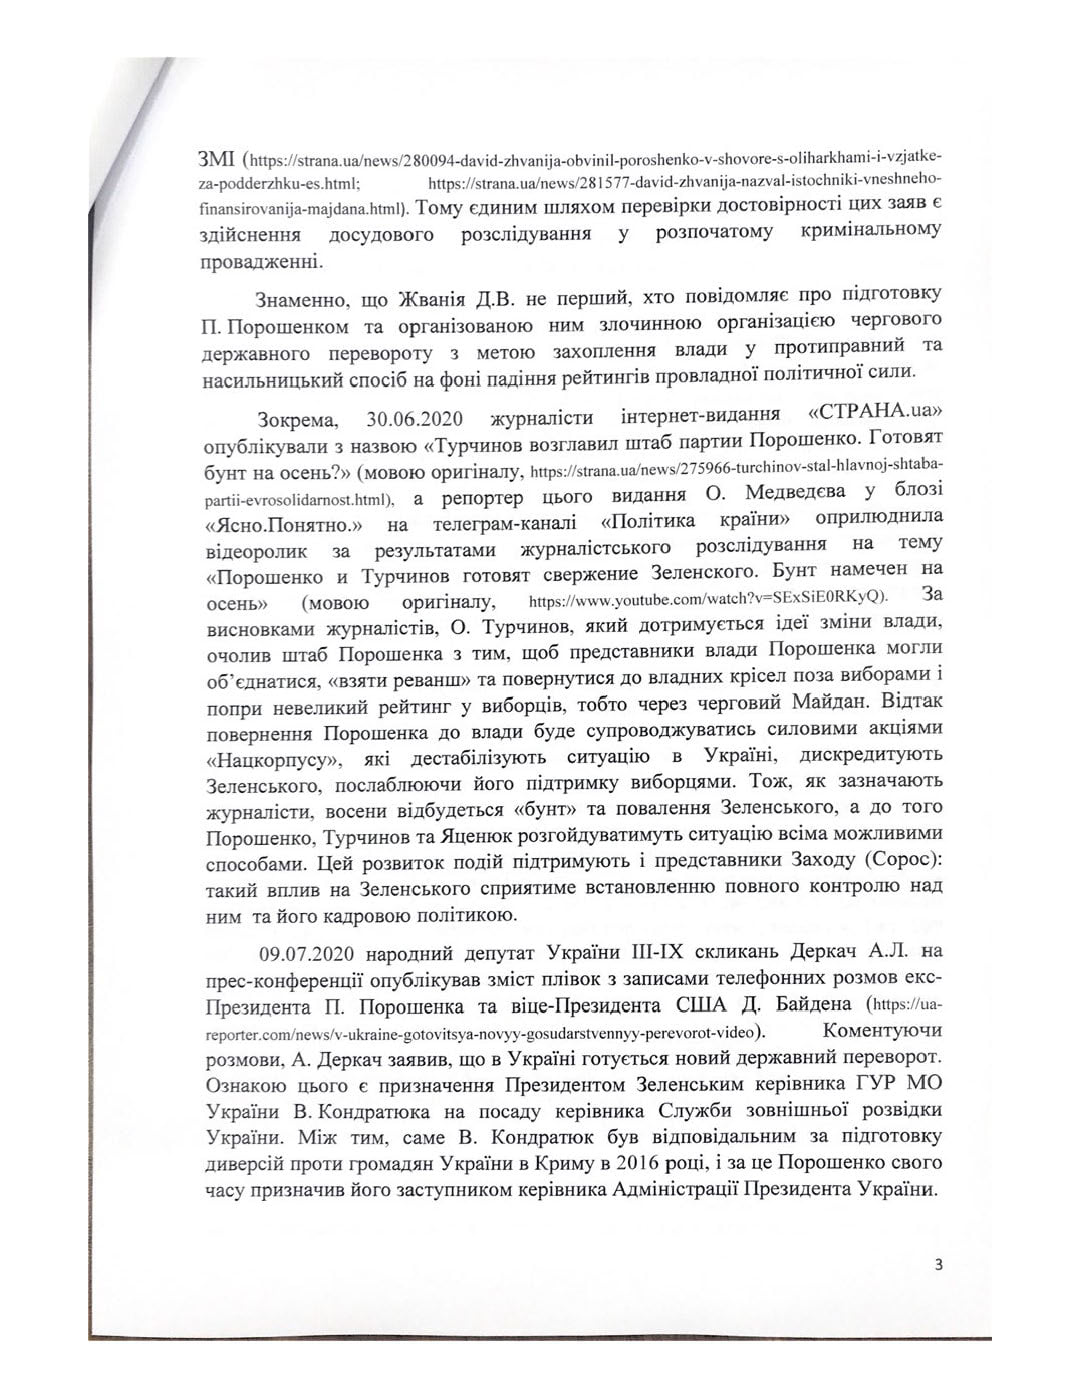 Против Порошенко возбудили дело о подготовке госпереворота в 2014-м году. Скриншот: facebook.com/ RRKuzmin